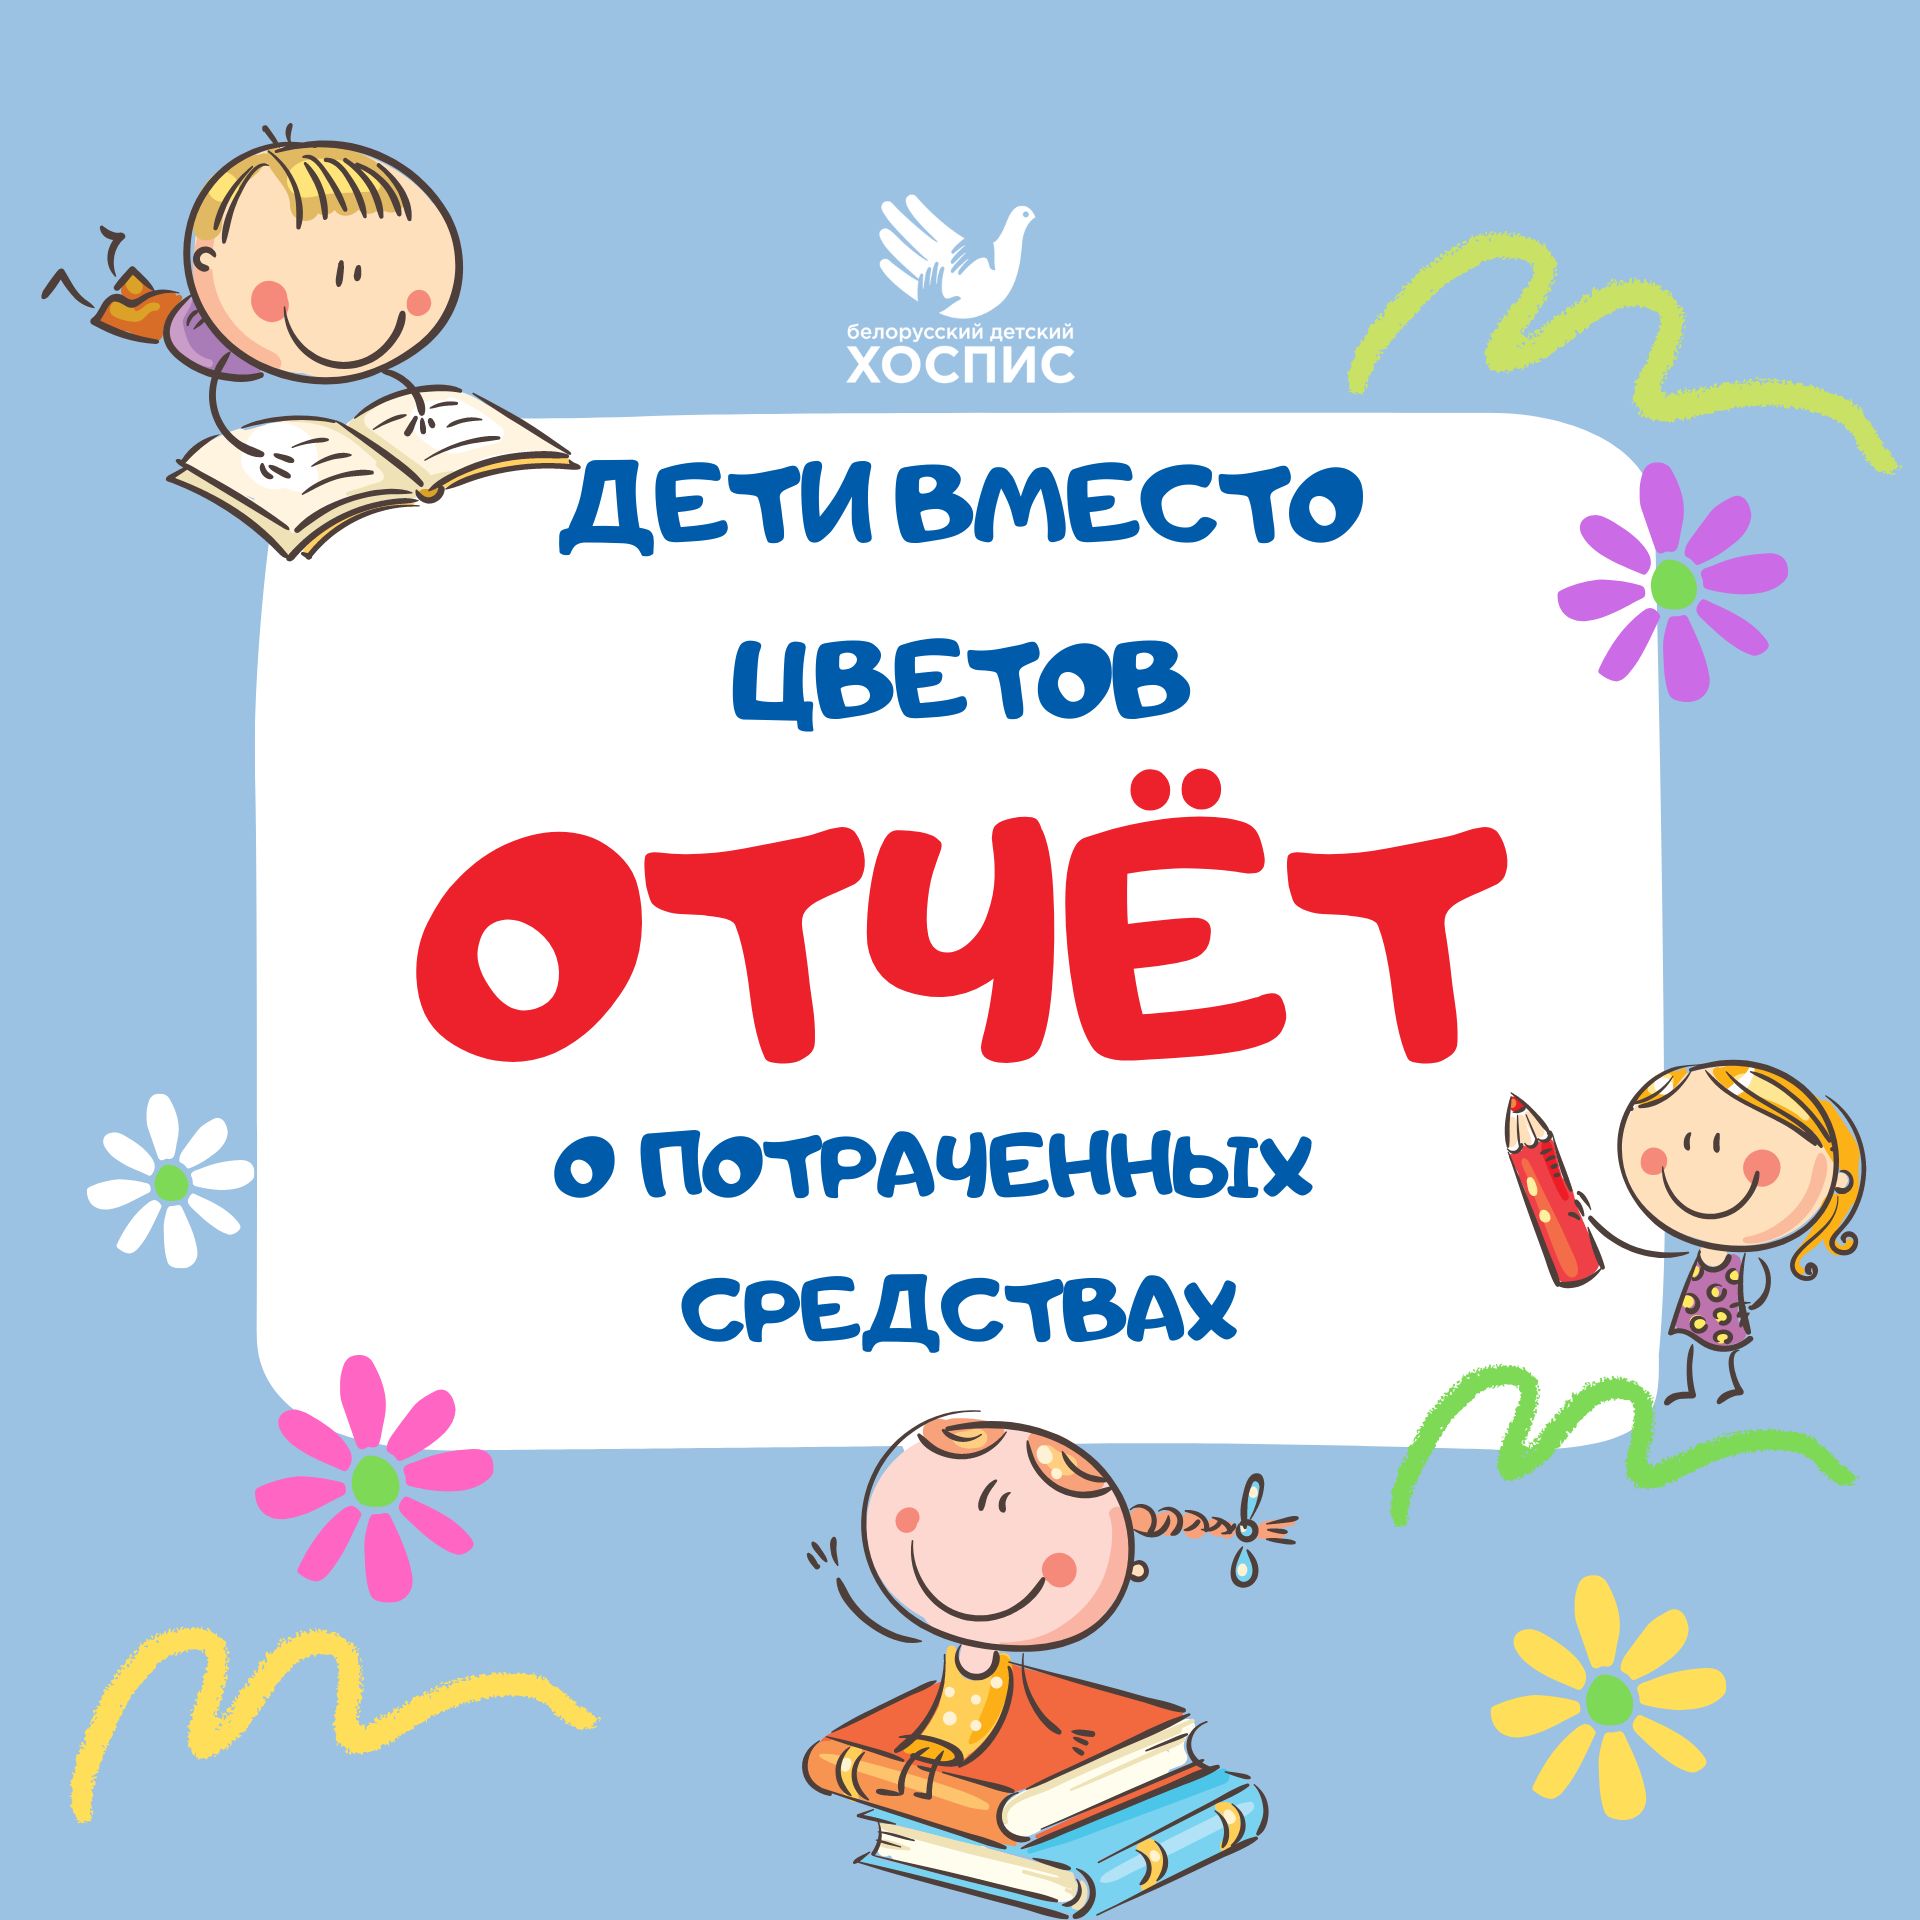 Отчет по акции "Дети вместо цветов"-2022